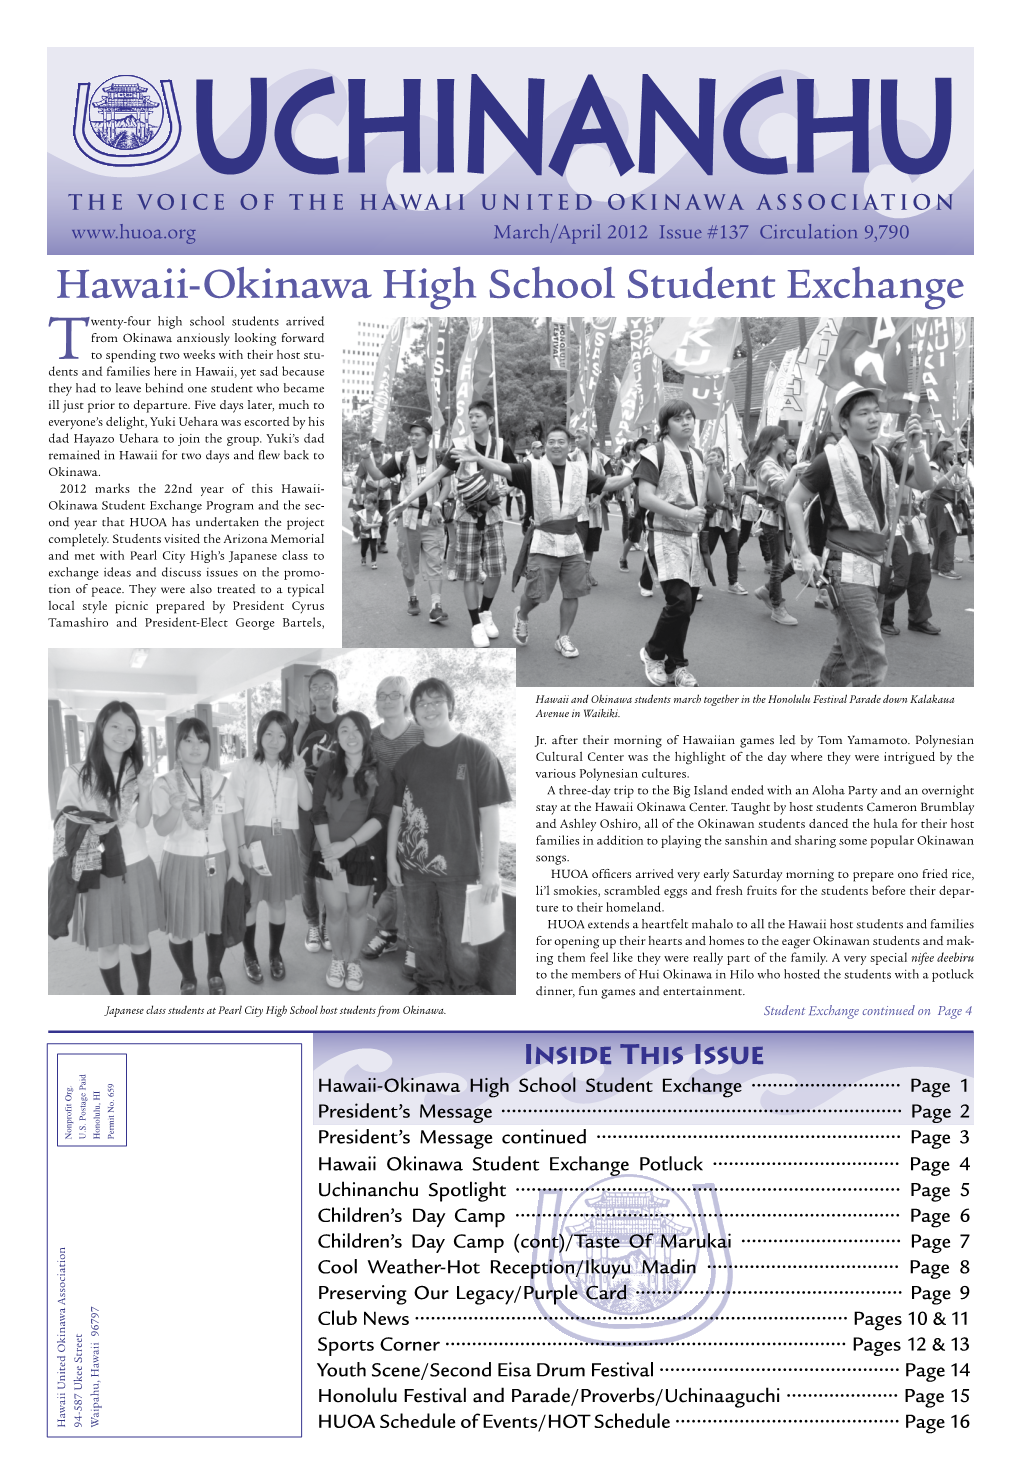 Hawaii-Okinawa High School Student Exchange